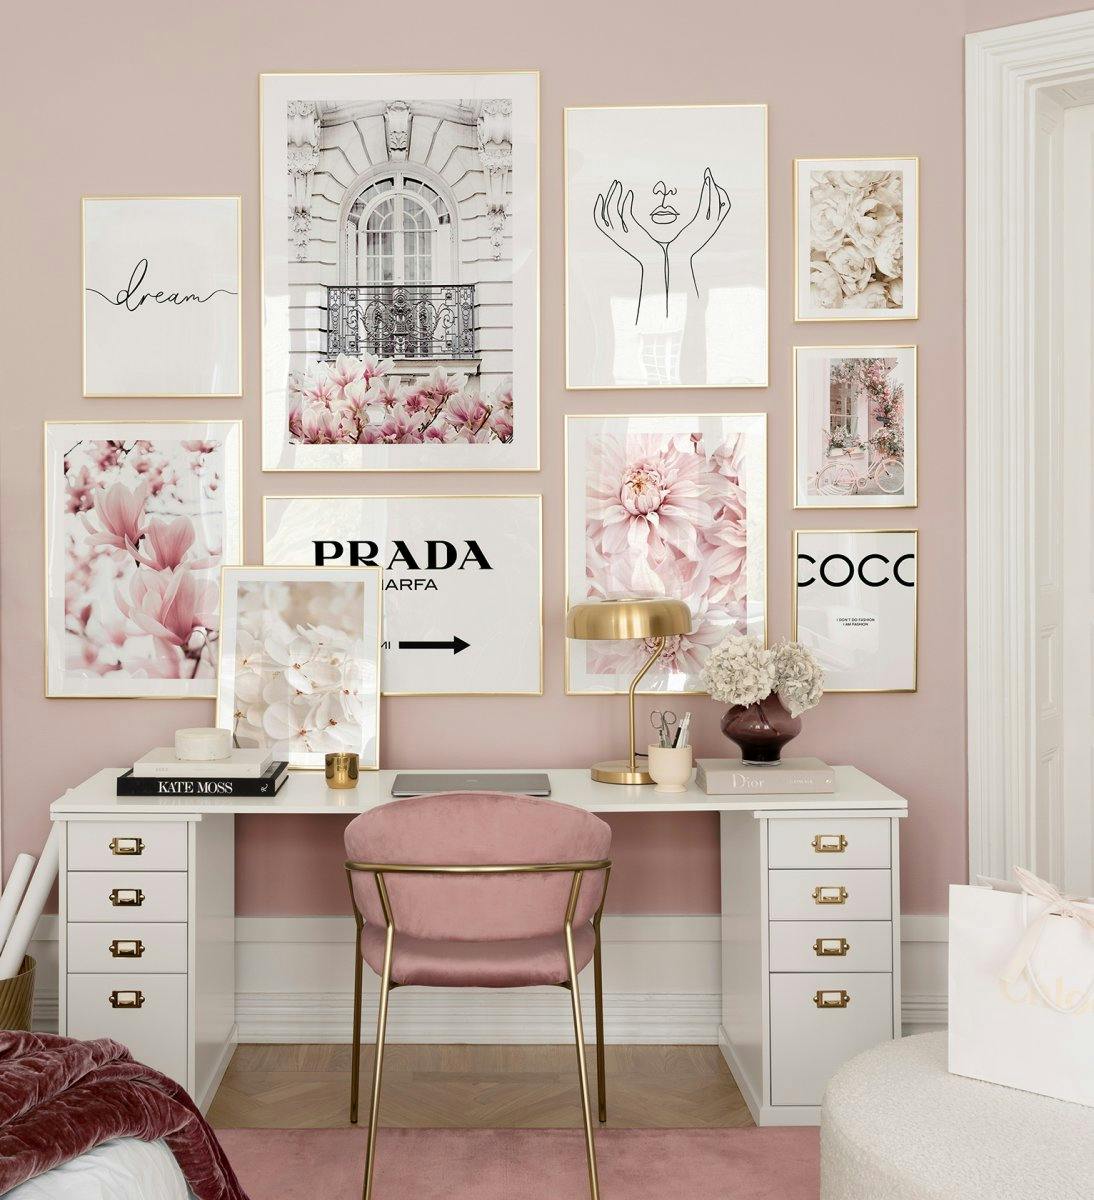 Růžová nástěnná galerie se špičkovými módními značkami, které jsou vystavené ve zlatých rámečcích, se dokonale hodí do domácí ka